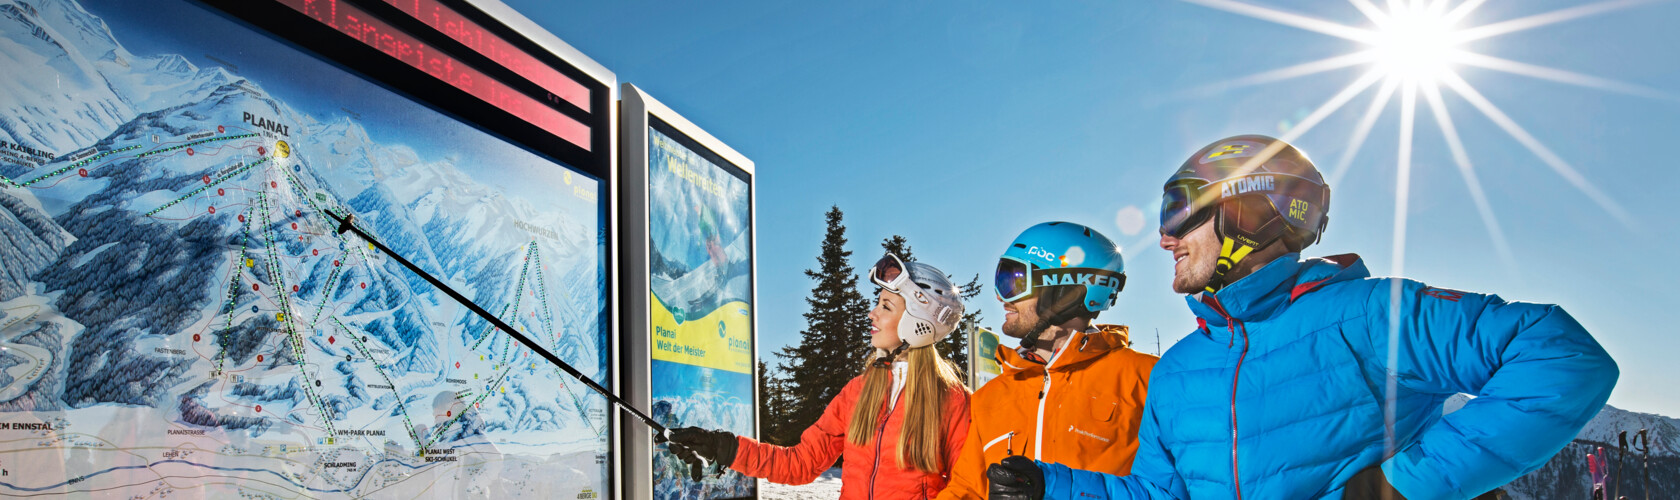 Bei den Infotafeln auf der Planai findest du alle wichtigen Infos für deinen Skitag!